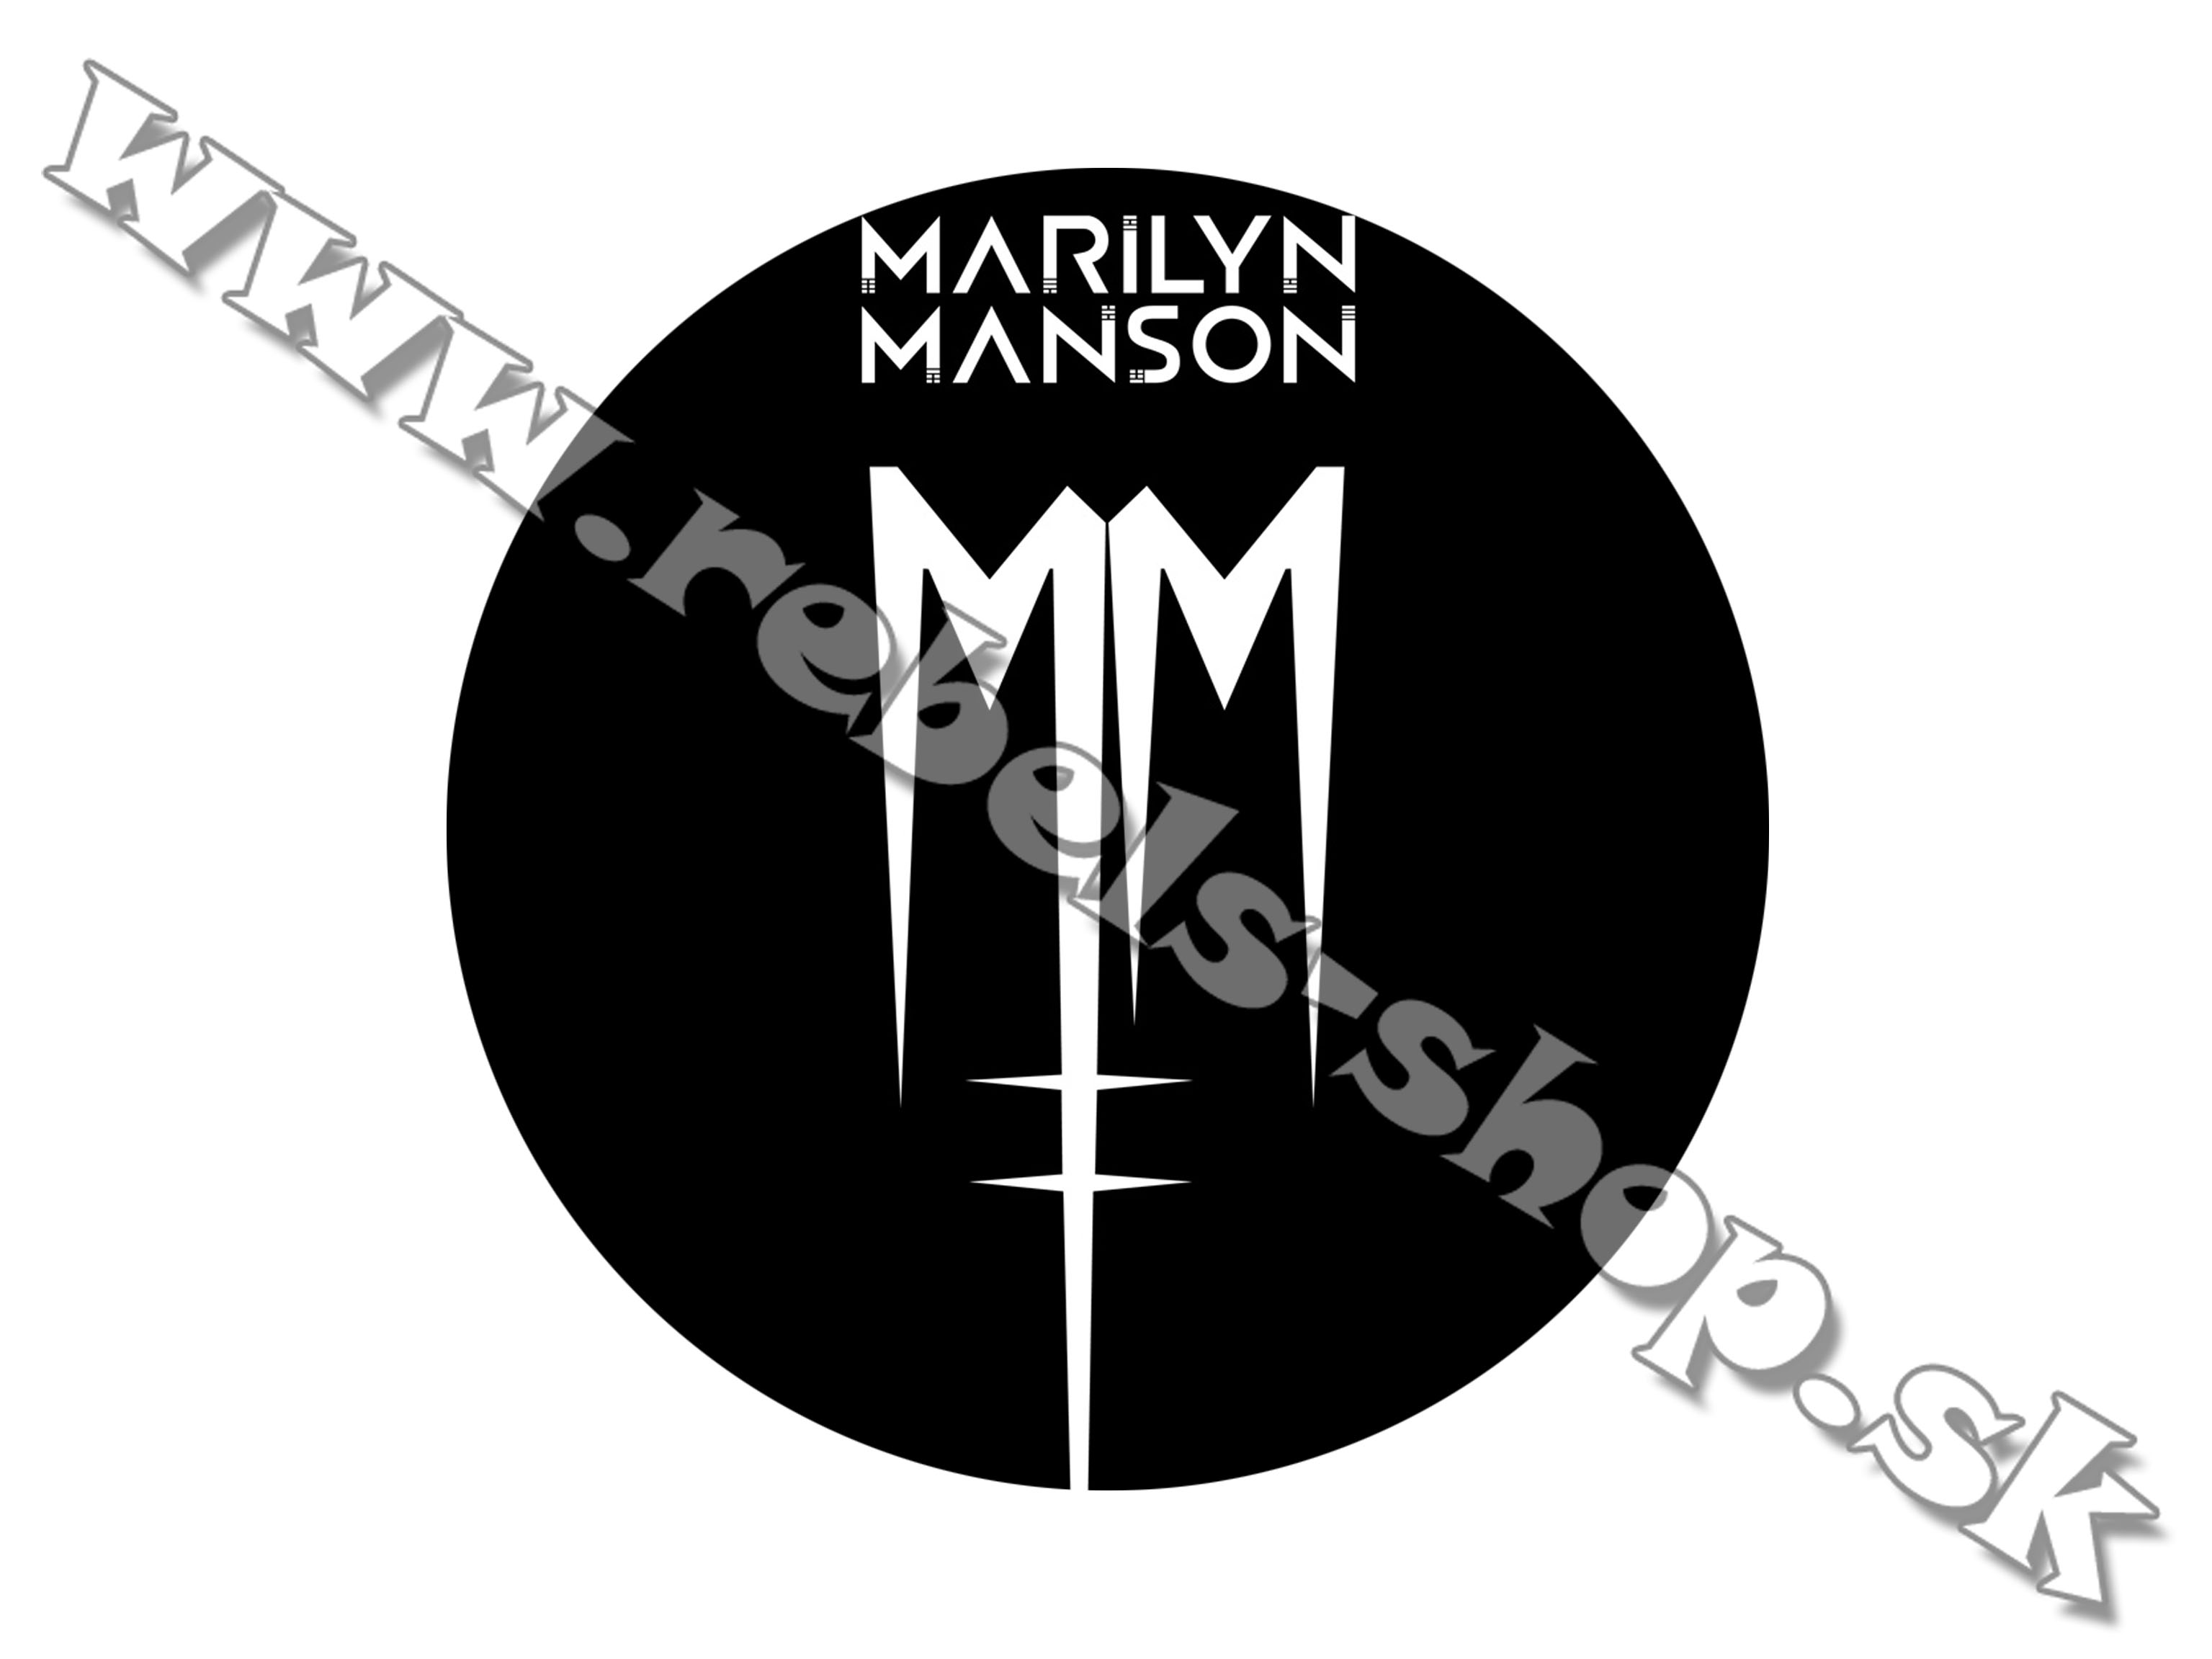 Odznak "Marilyn Manson"